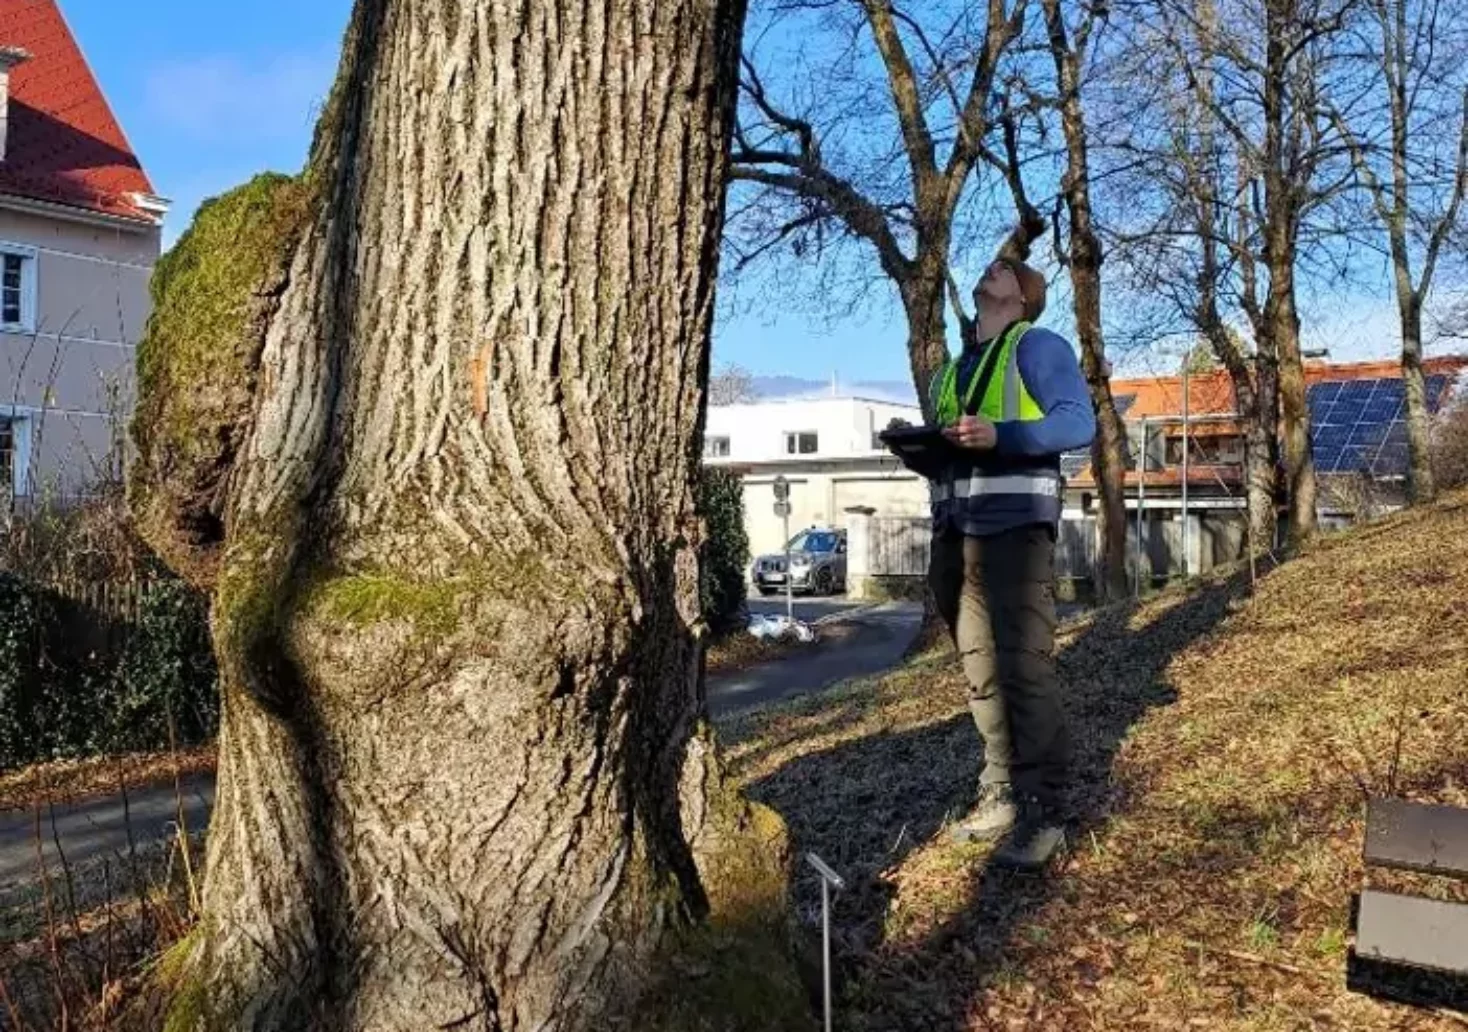 Ein Bild auf 5min.at zeigt einen Mitarbeiter des Villacher Baummanagements beim Durchchecken eines Baumes.